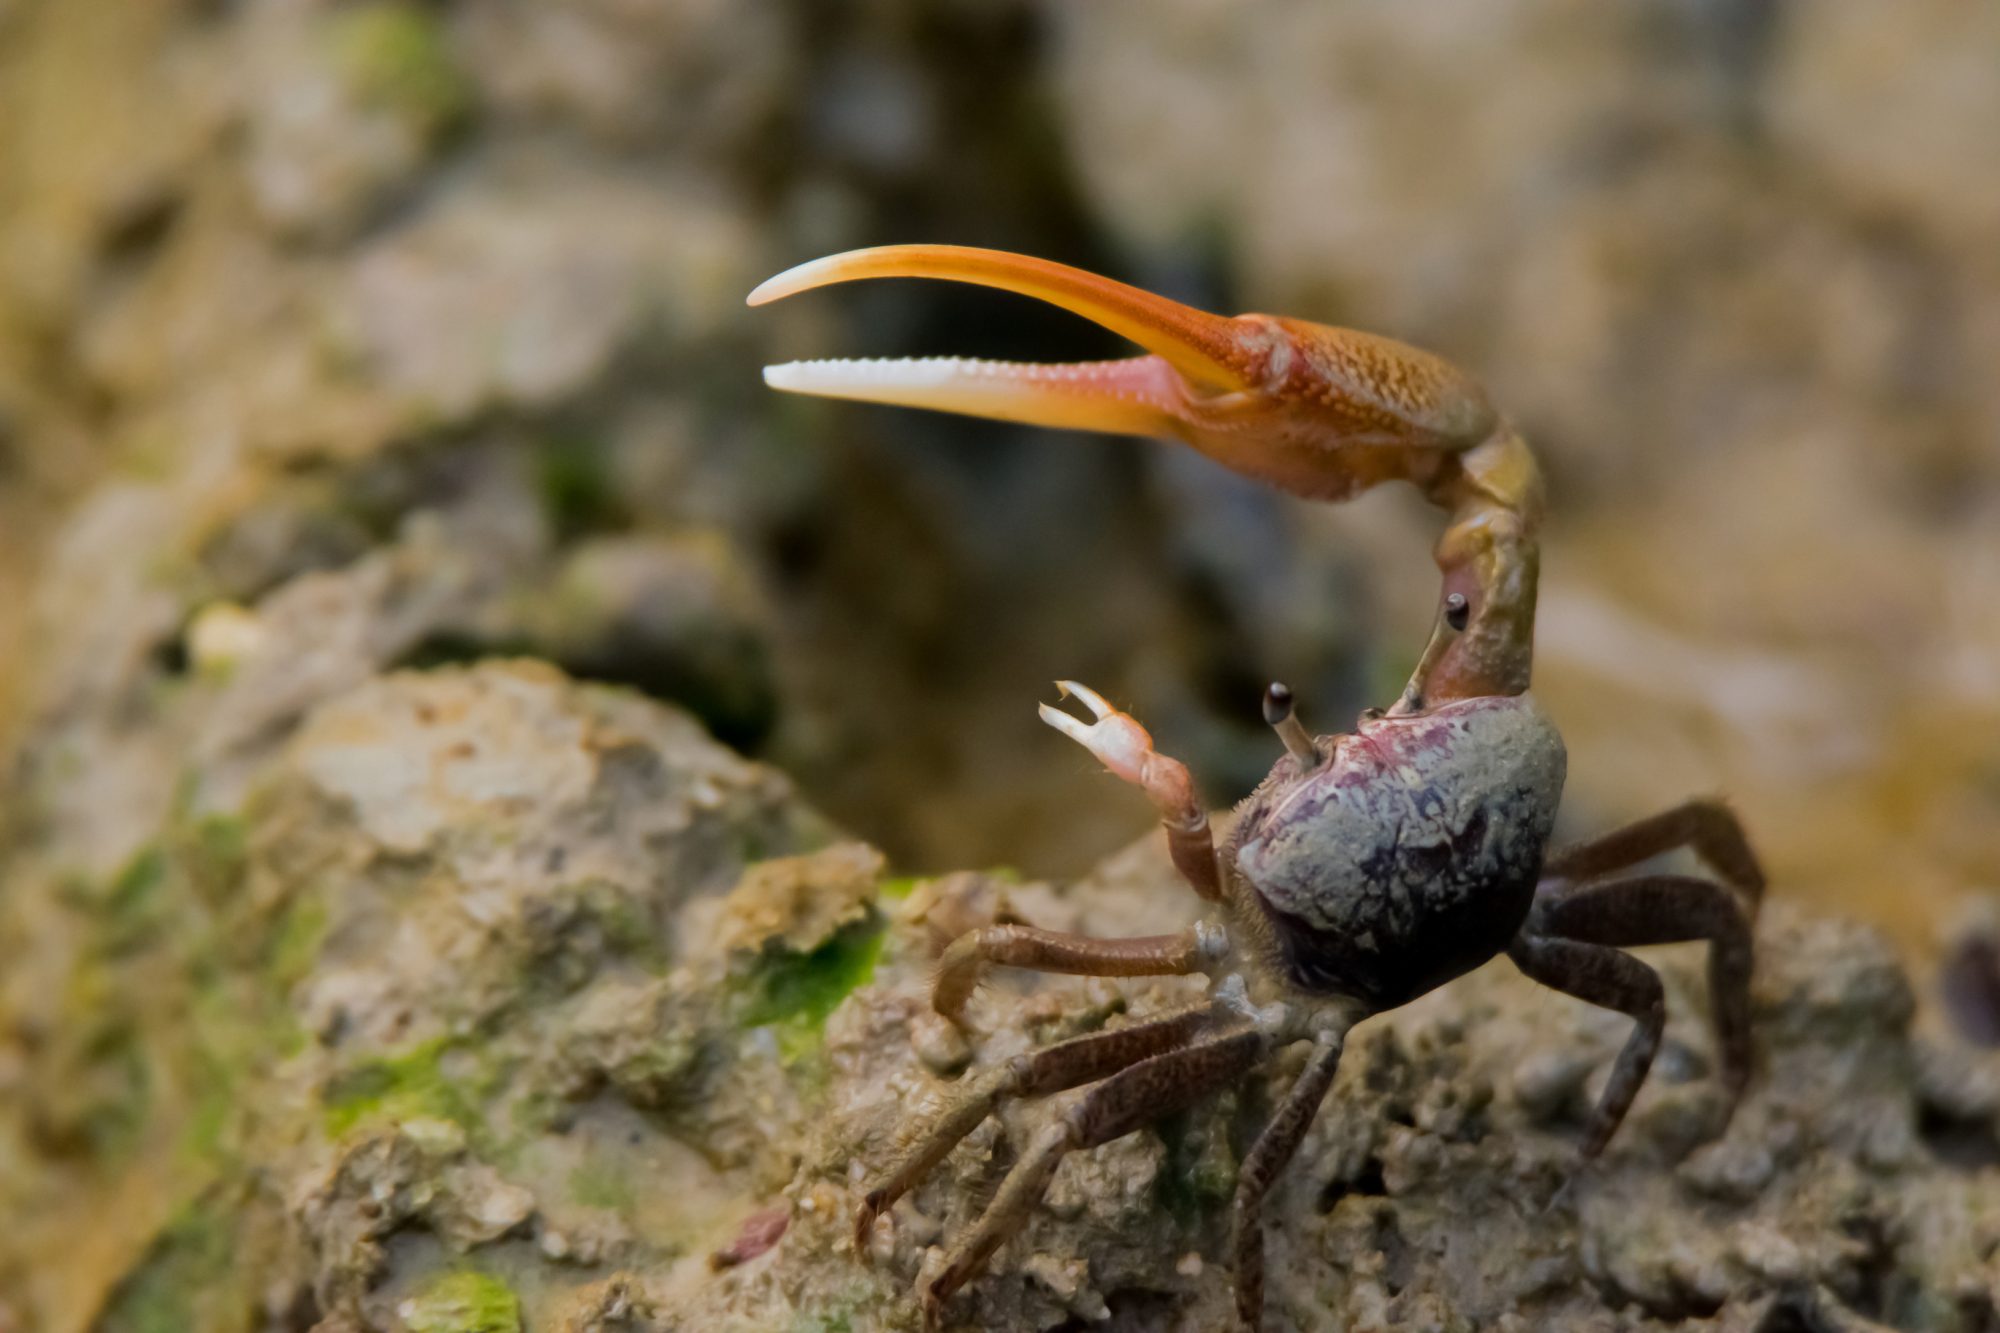 A fiddler crab